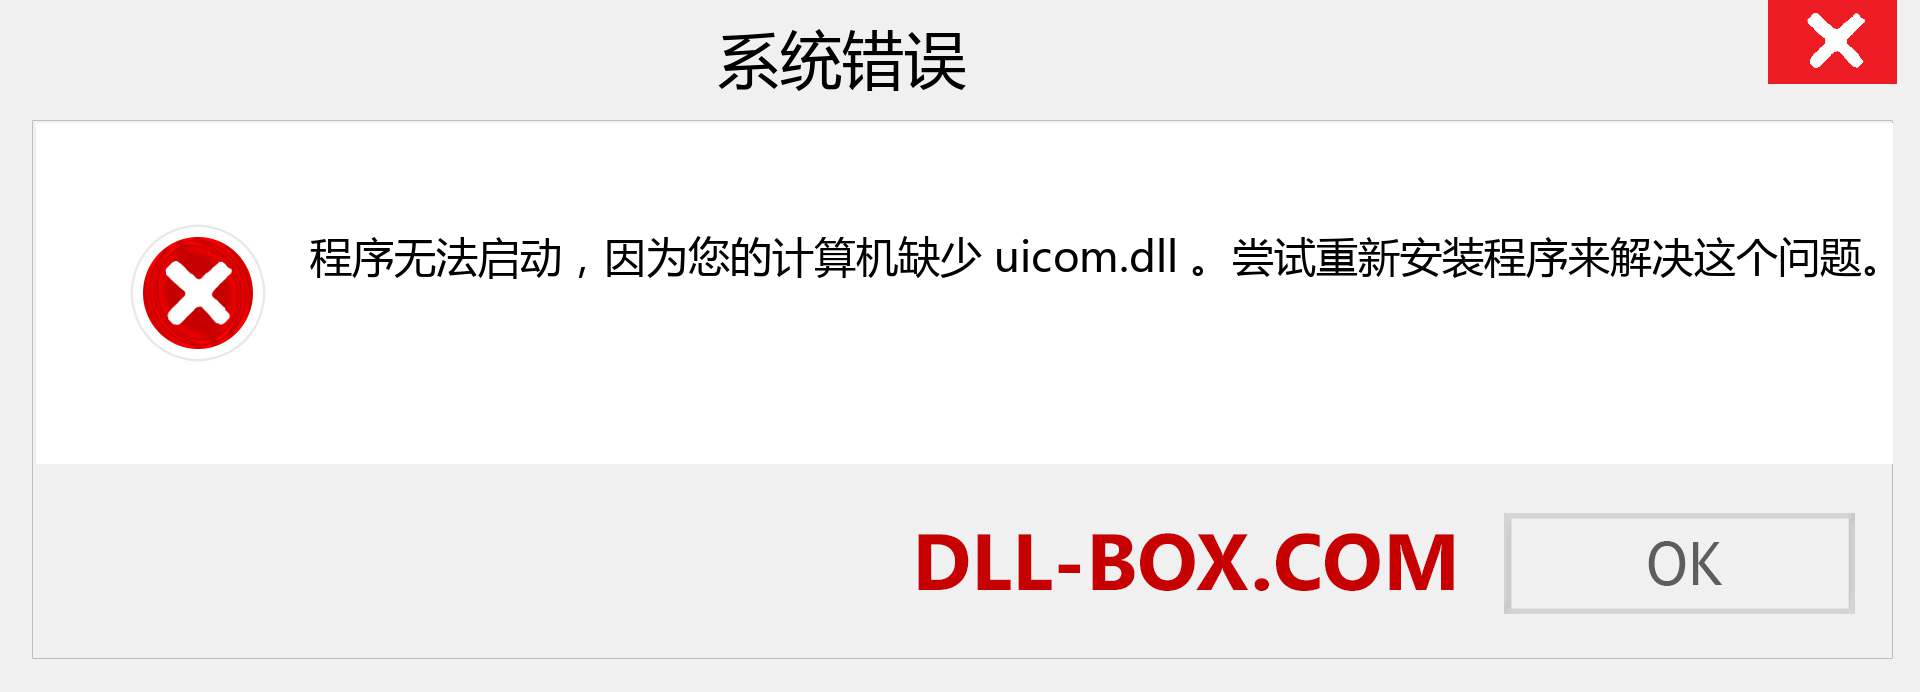 uicom.dll 文件丢失？。 适用于 Windows 7、8、10 的下载 - 修复 Windows、照片、图像上的 uicom dll 丢失错误